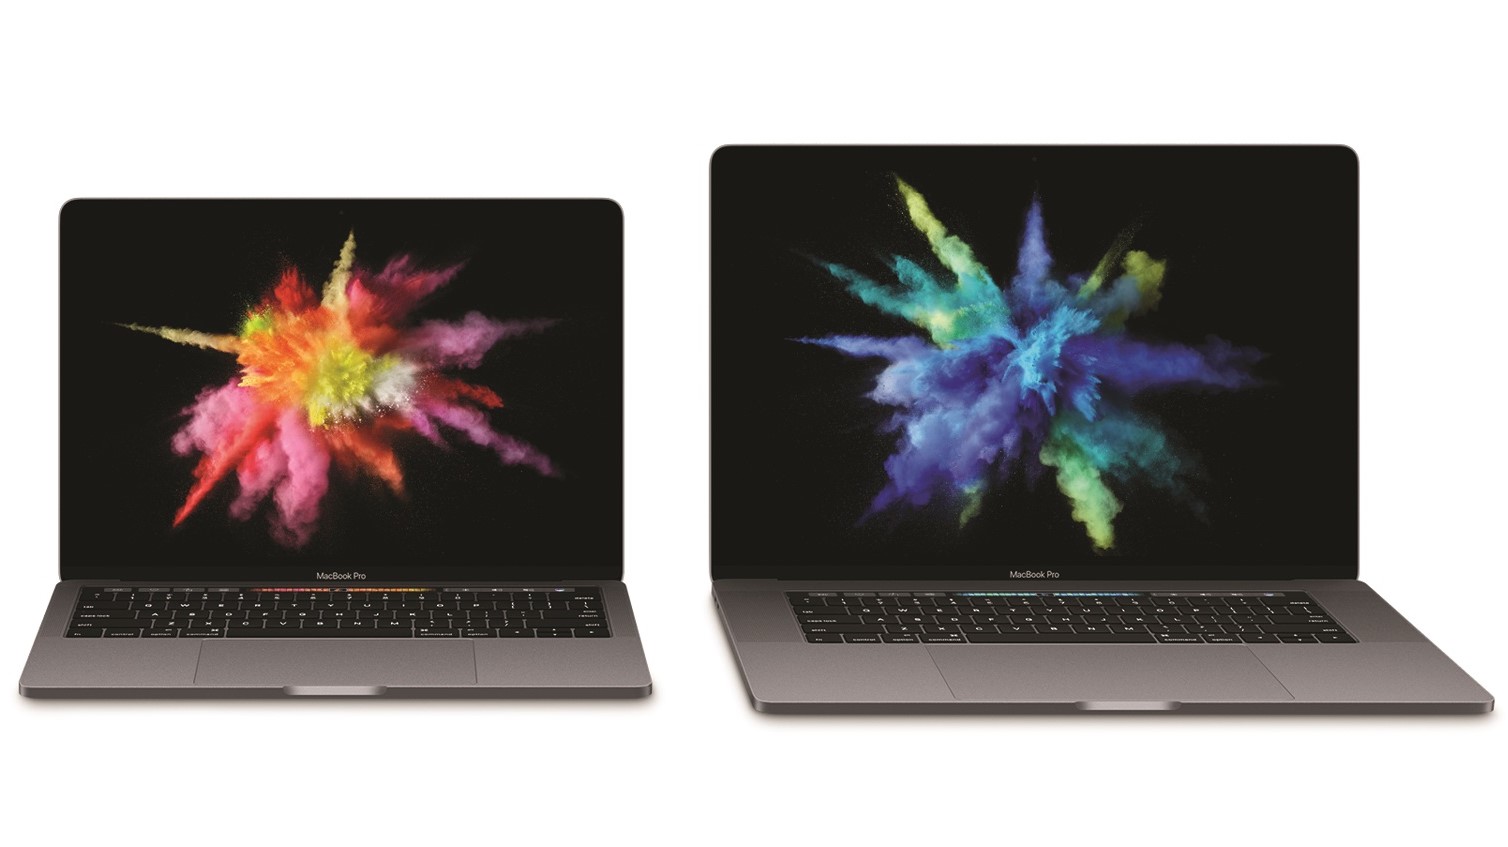 Den nye MacBook Pro får stort sett god kritikk, men det stilles spørsmål med ting som ytelse og batteri.